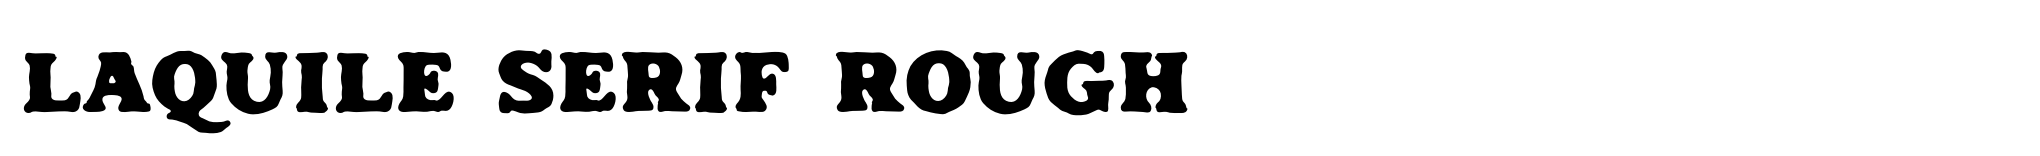 Laquile Serif Rough image